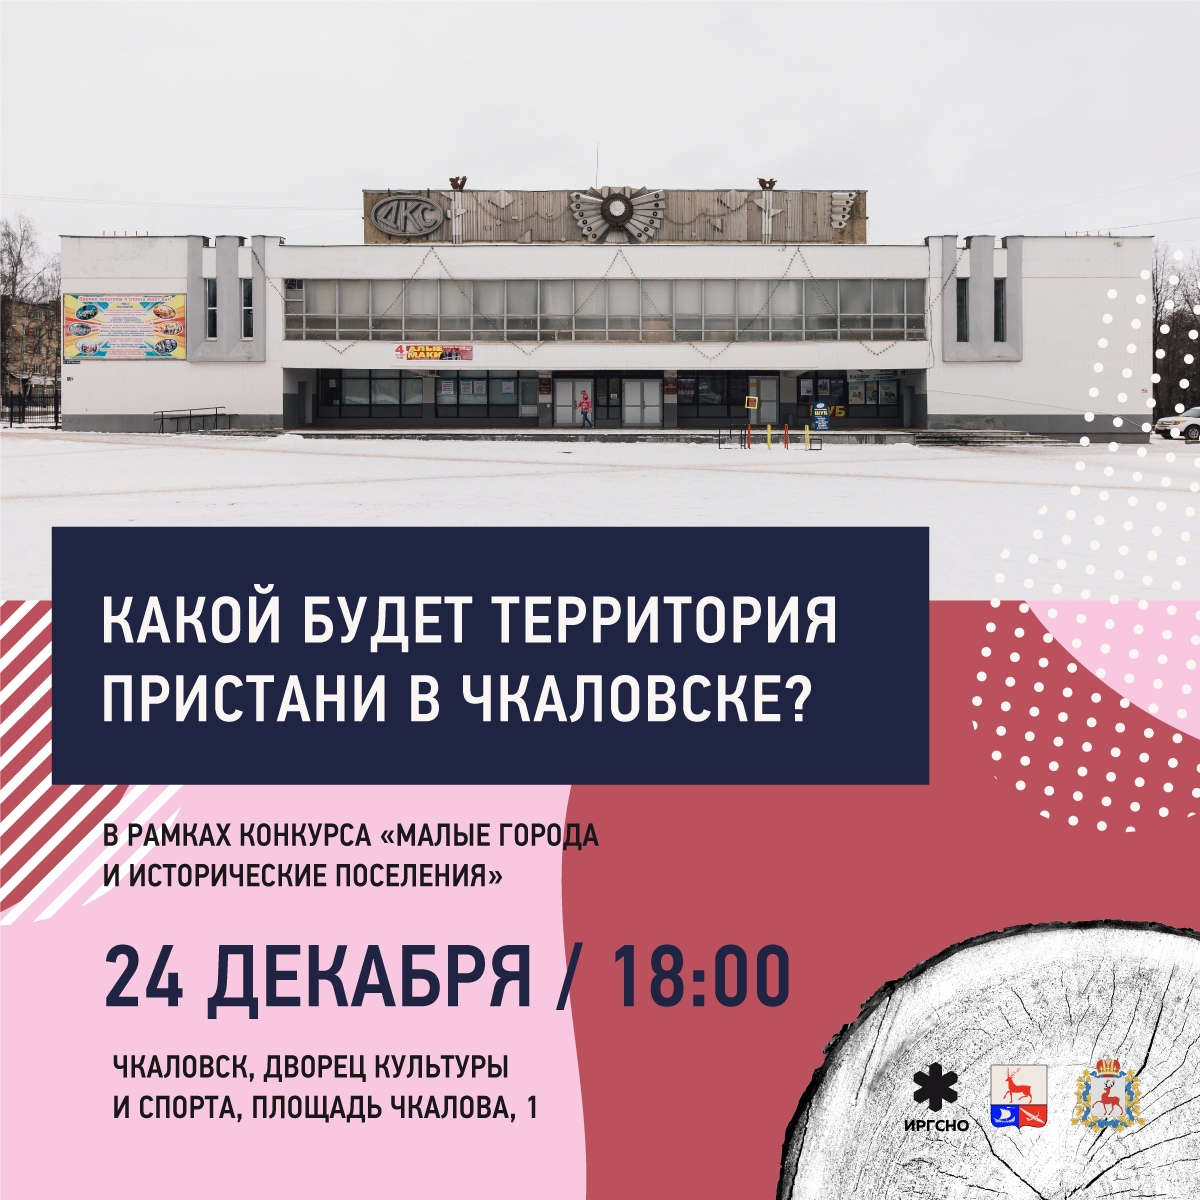 Вторые общественные обсуждения концепции благоустройства пристани пройдут в Чкаловске